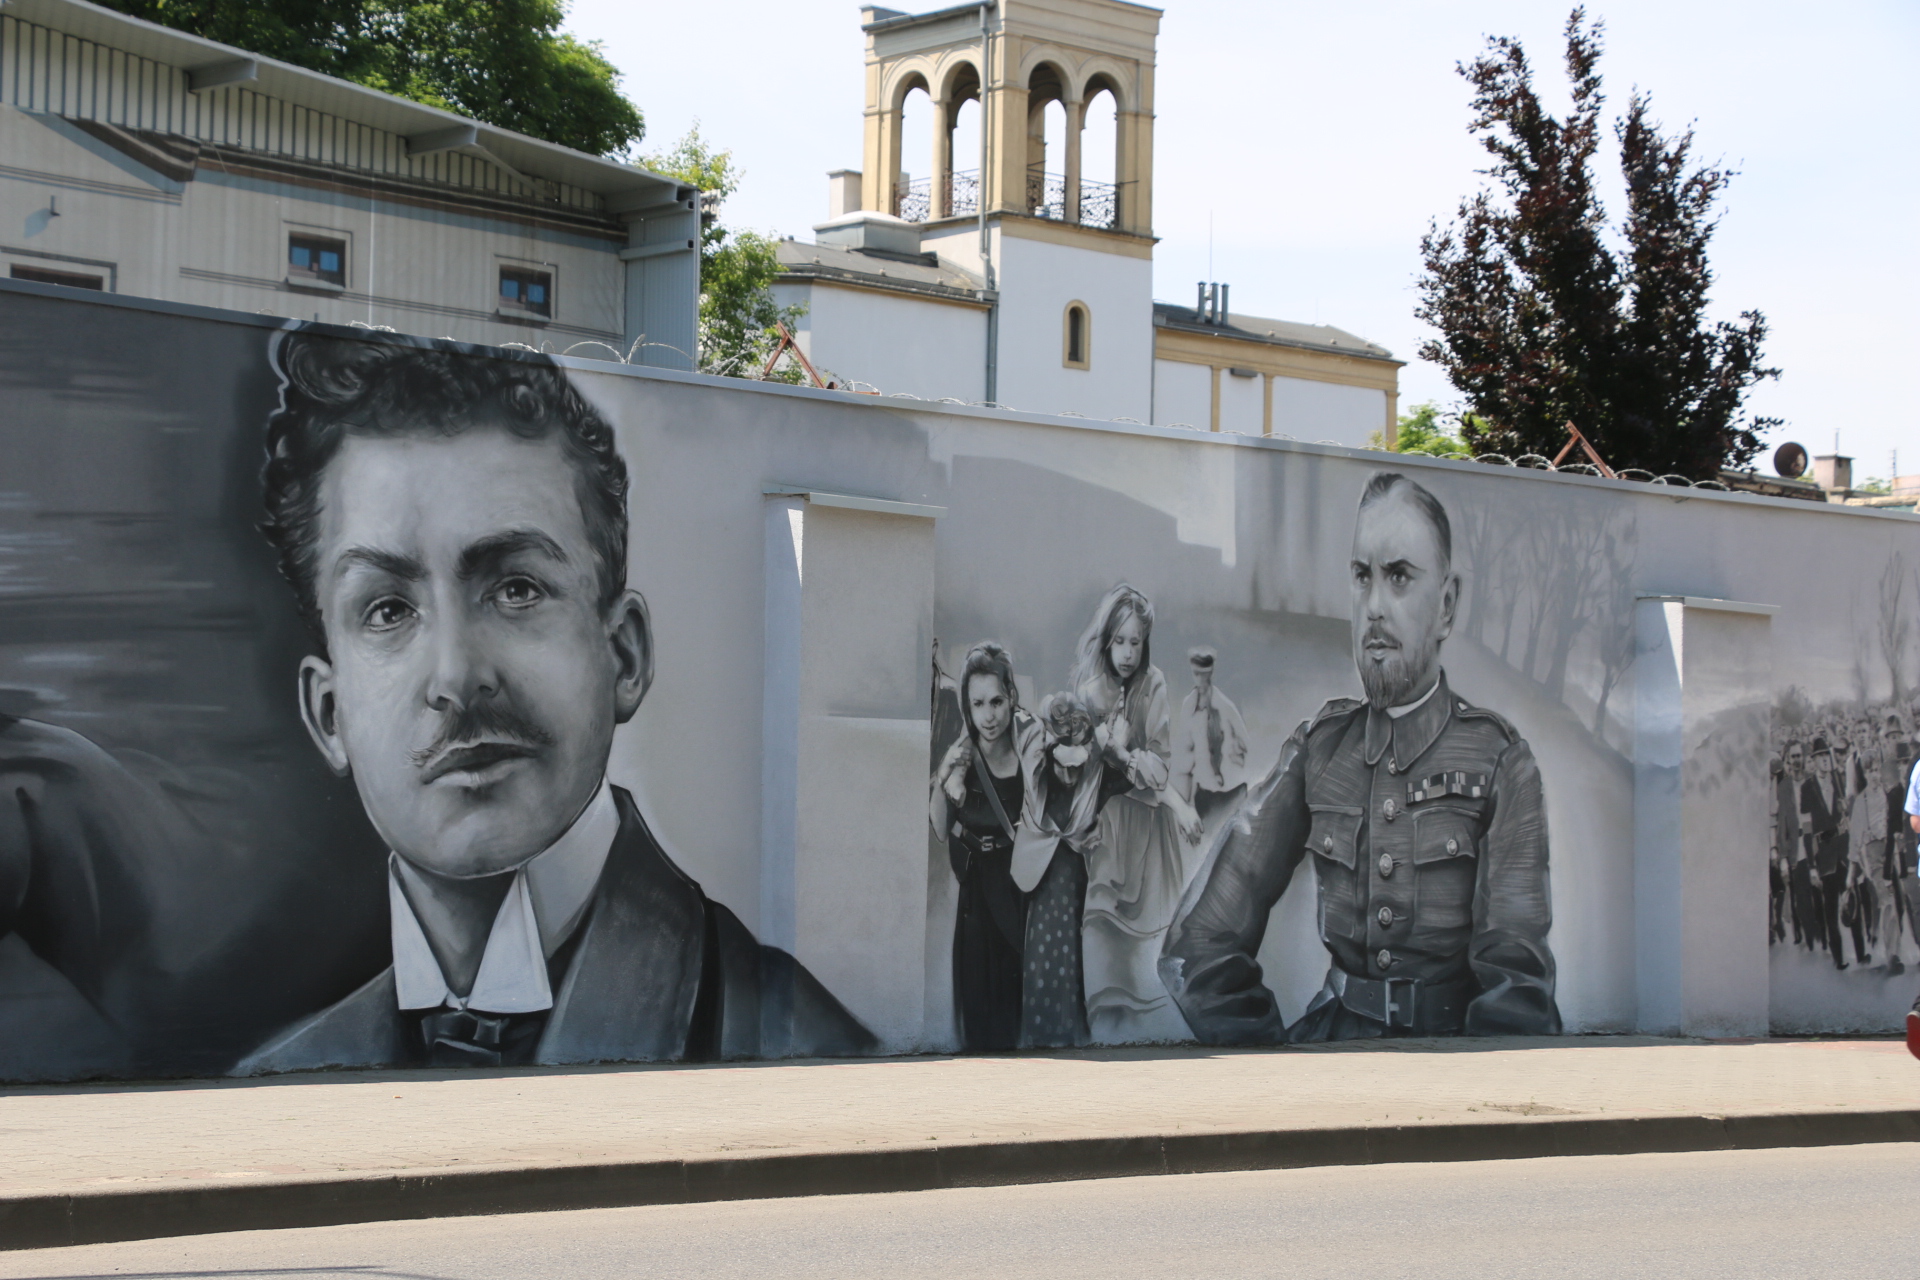 Mury spółki Rosomak - mural przedstawia wydarzenia z Powstań Śląskich, portrety dowódców i mieszkańców regionu